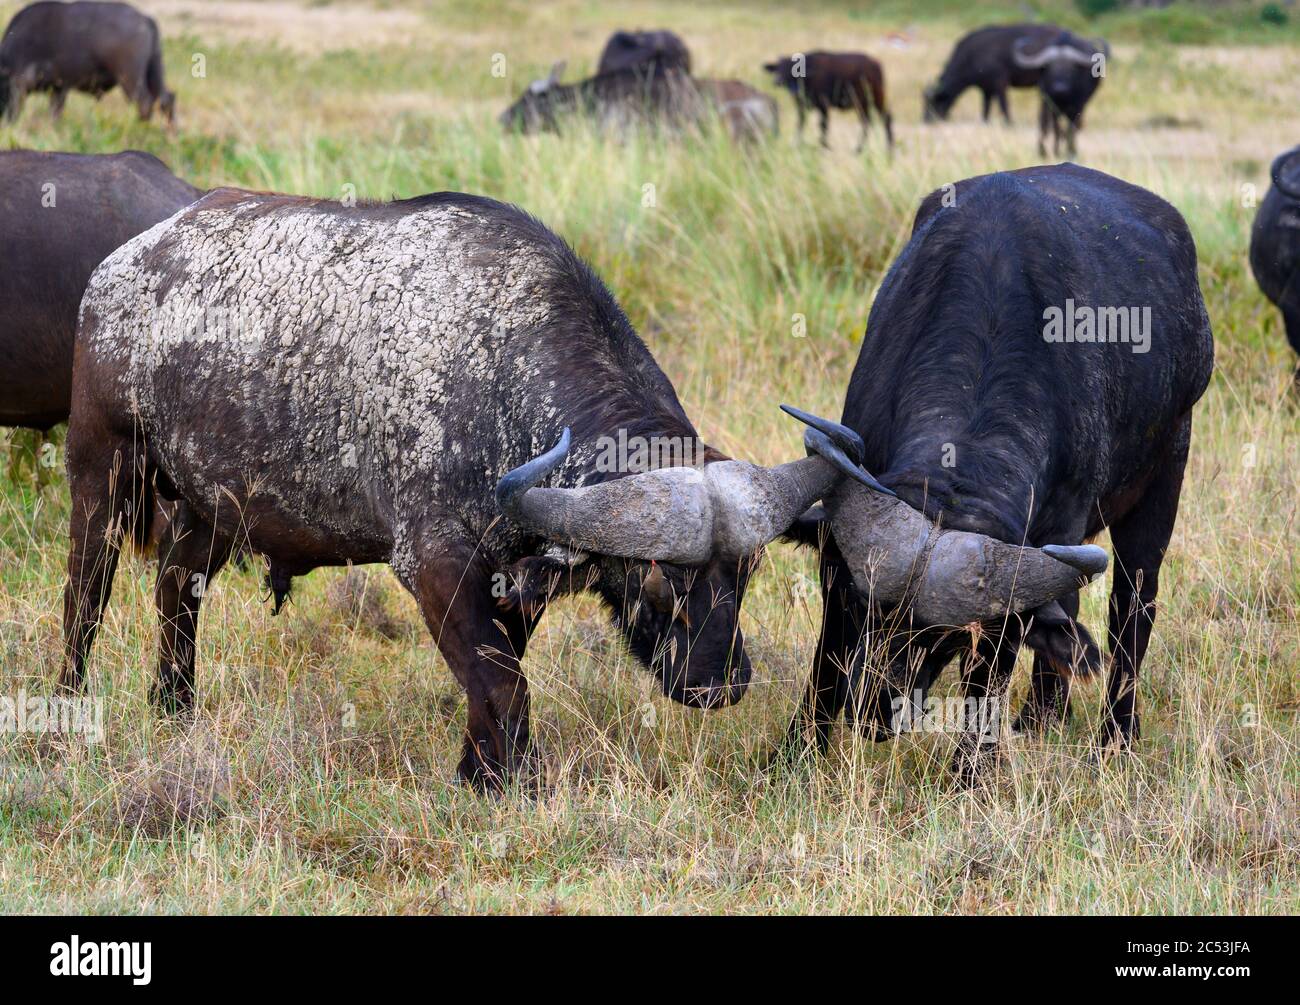 Dos cuernos de bloqueo de búfalo macho. Búfalo africano o búfalo de cabo (Syncerus caffer), Parque Nacional del Lago Nakuru, Kenia, África Foto de stock